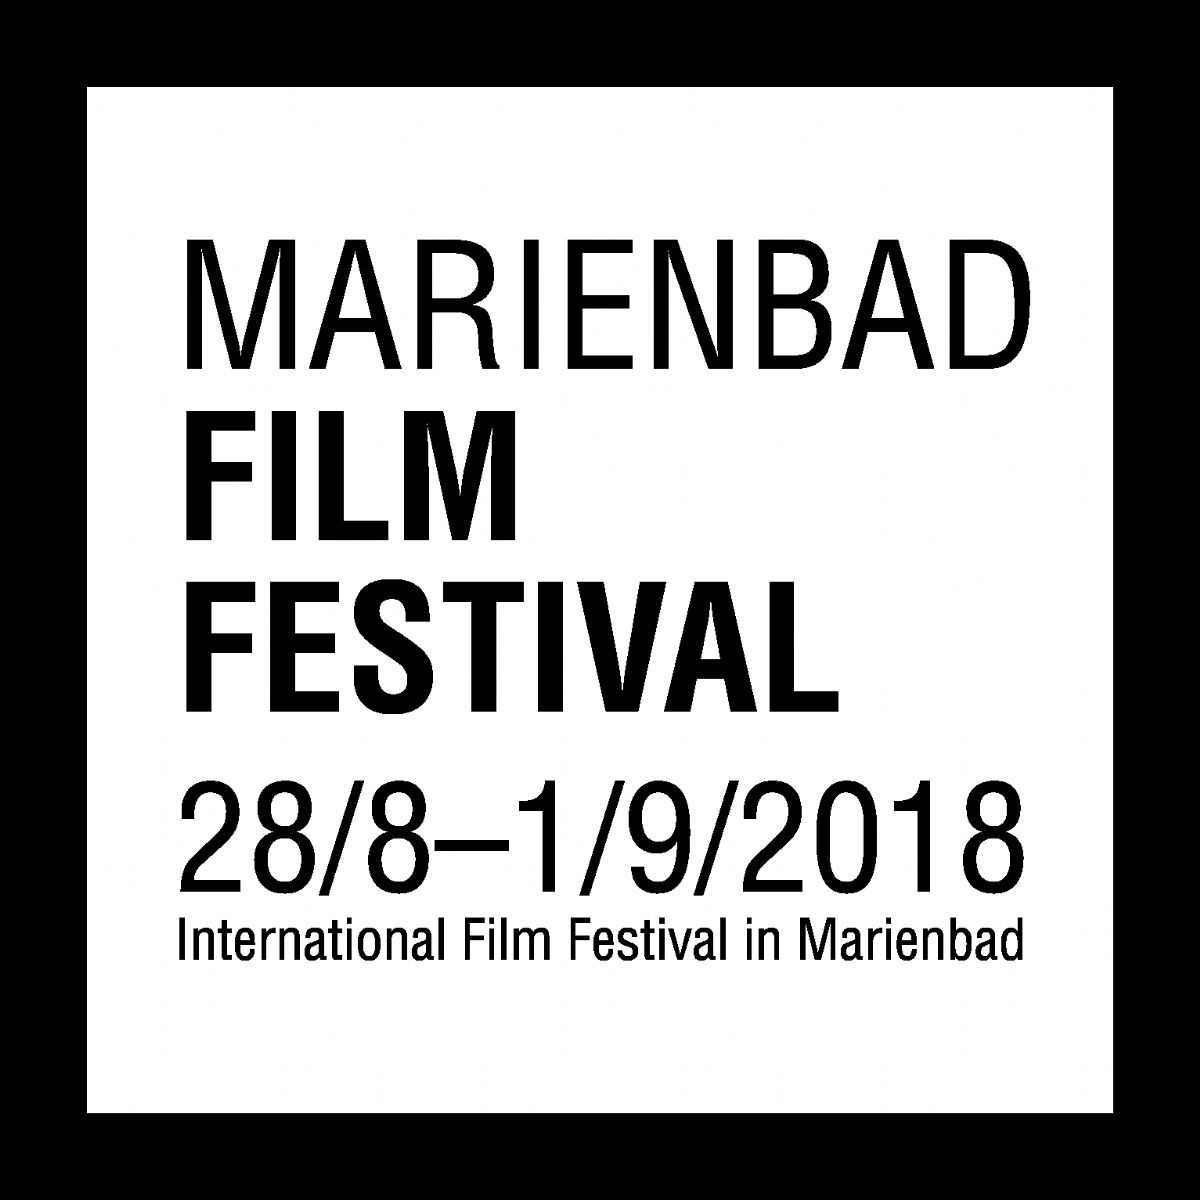 Marienbad Film Festival proběhne na přelomu srpna a září